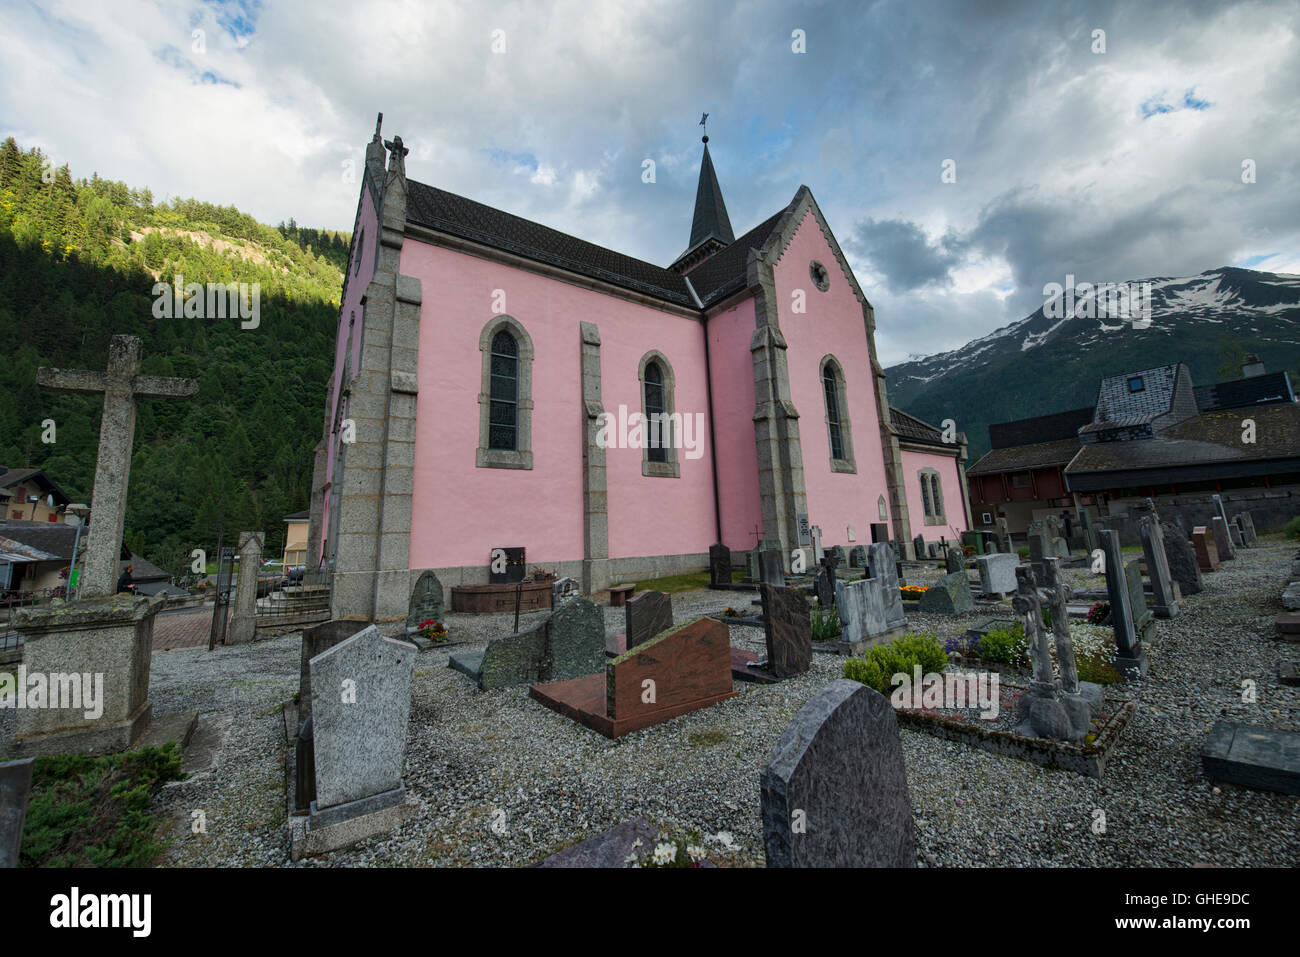 L'église de l'atmosphère du Trient, un village le long de la Haute Route, Suisse Banque D'Images